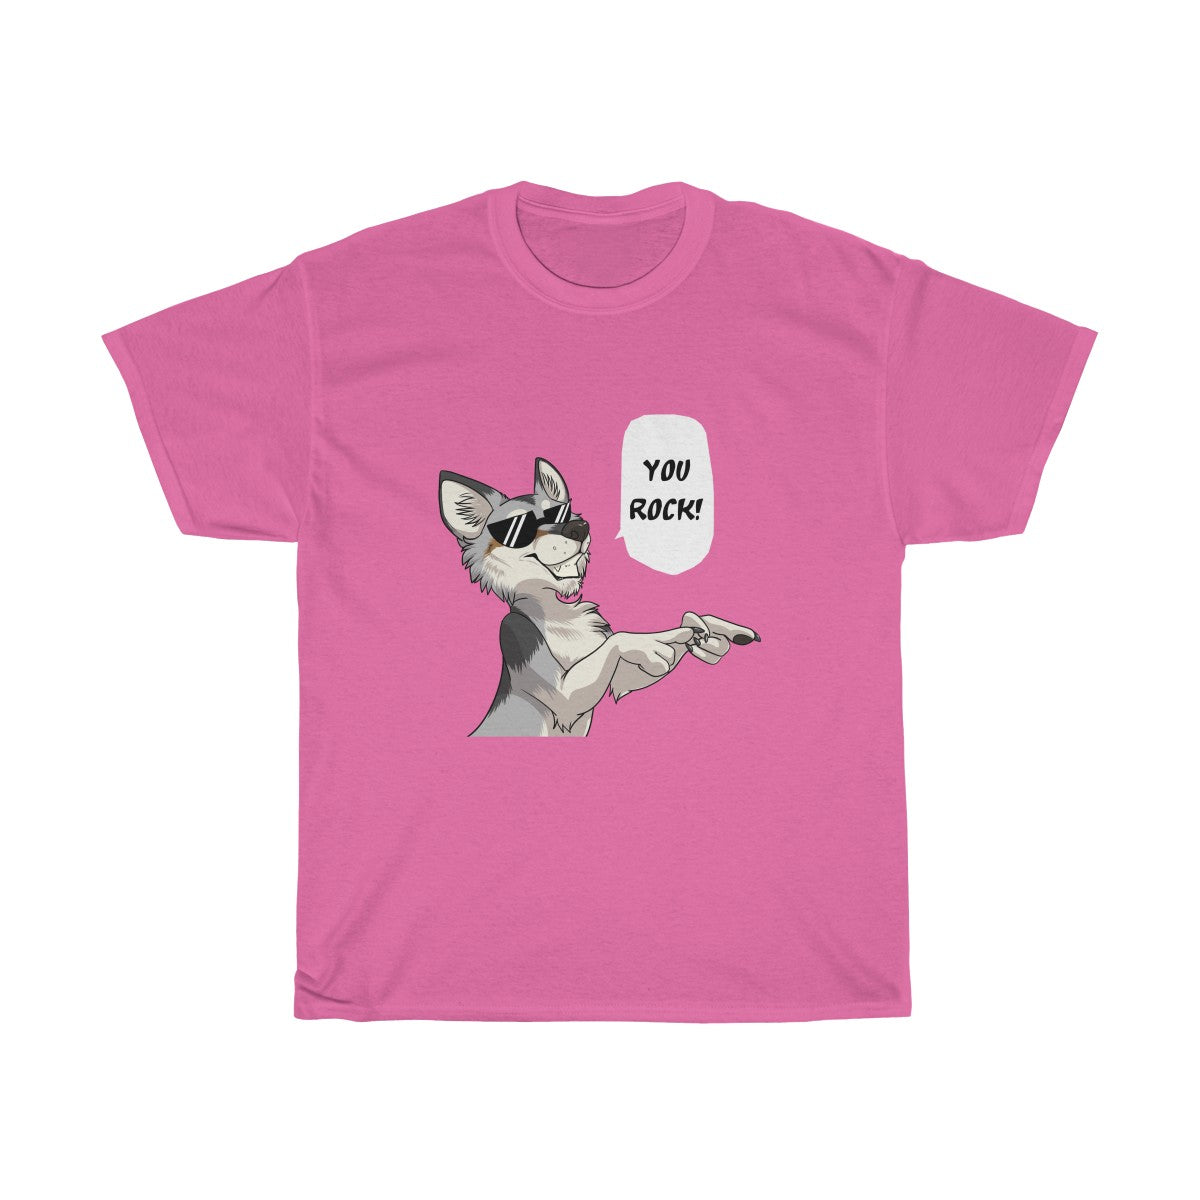 Wolf - T-Shirt T-Shirt Dire Creatures Pink S 